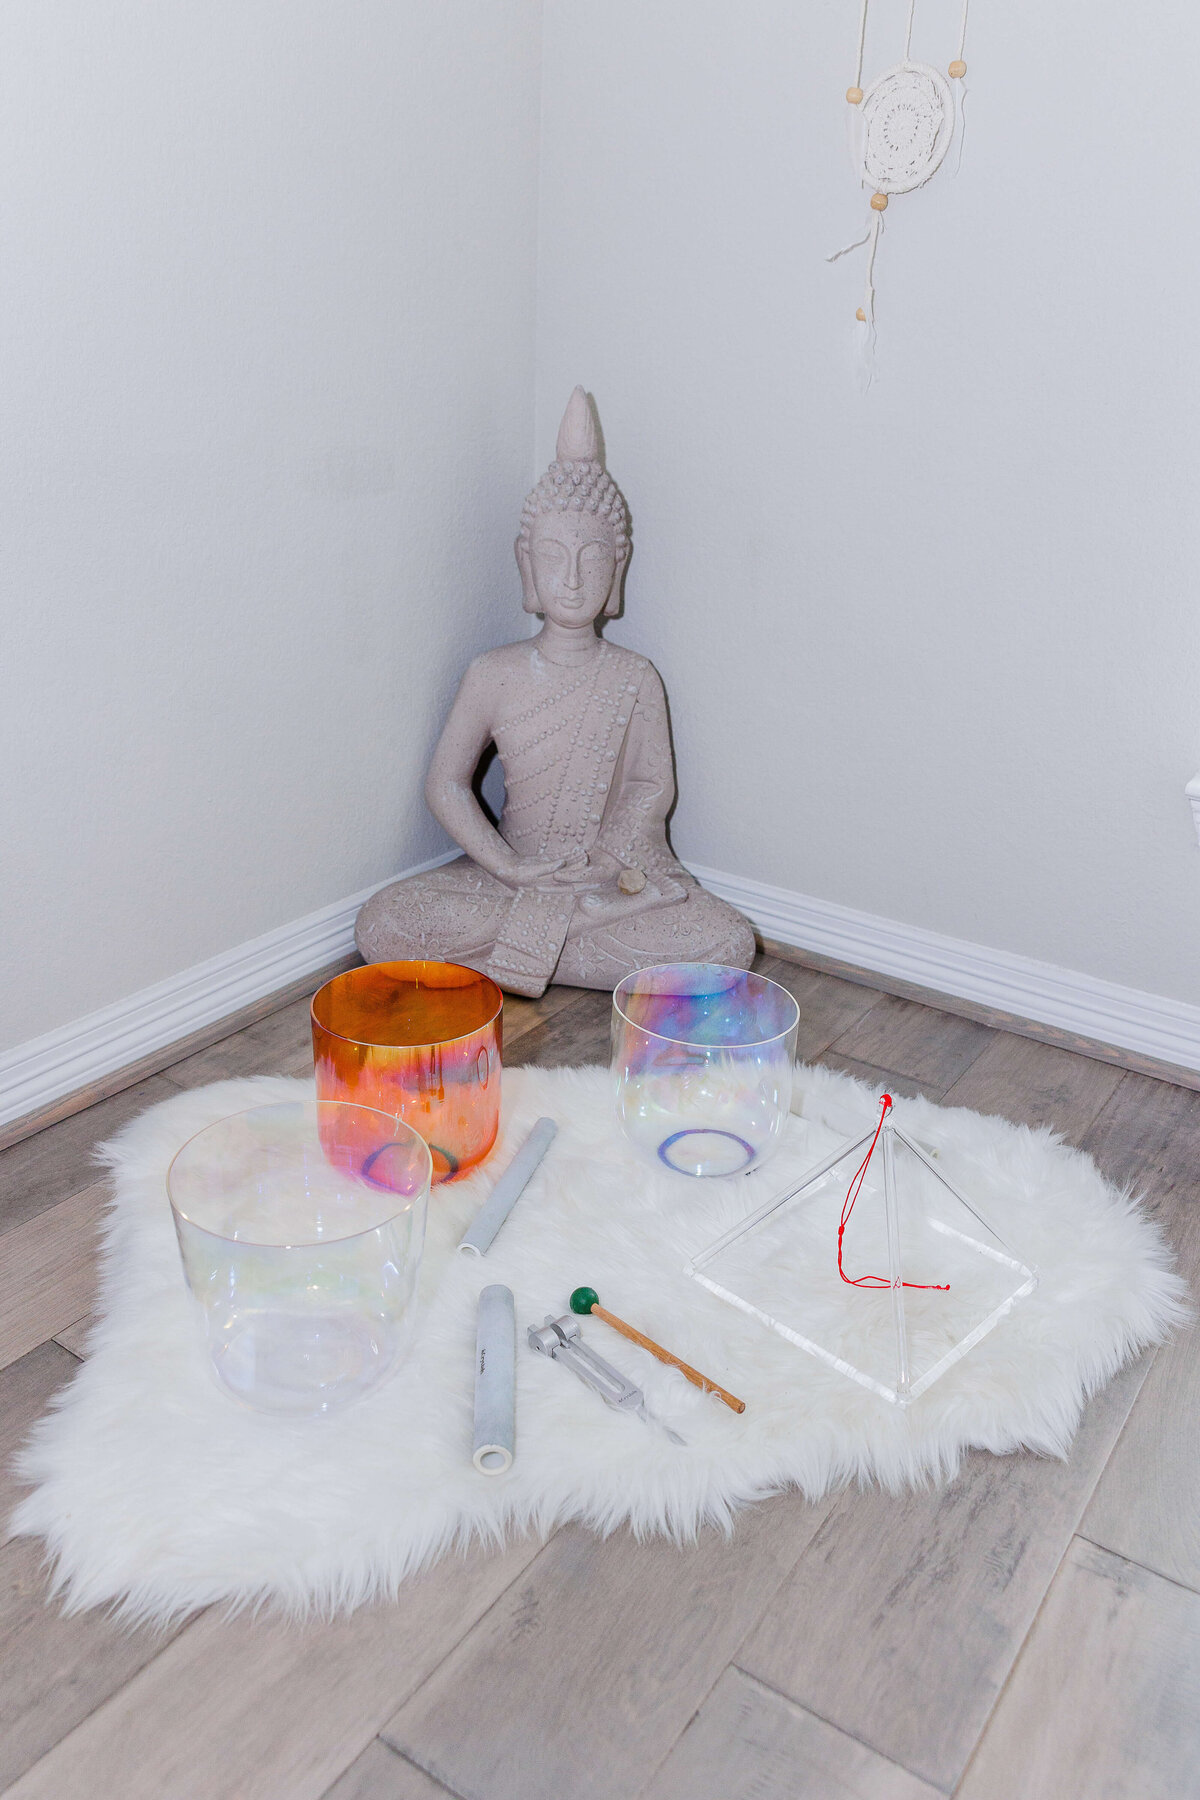 Budda and sound healing bowls